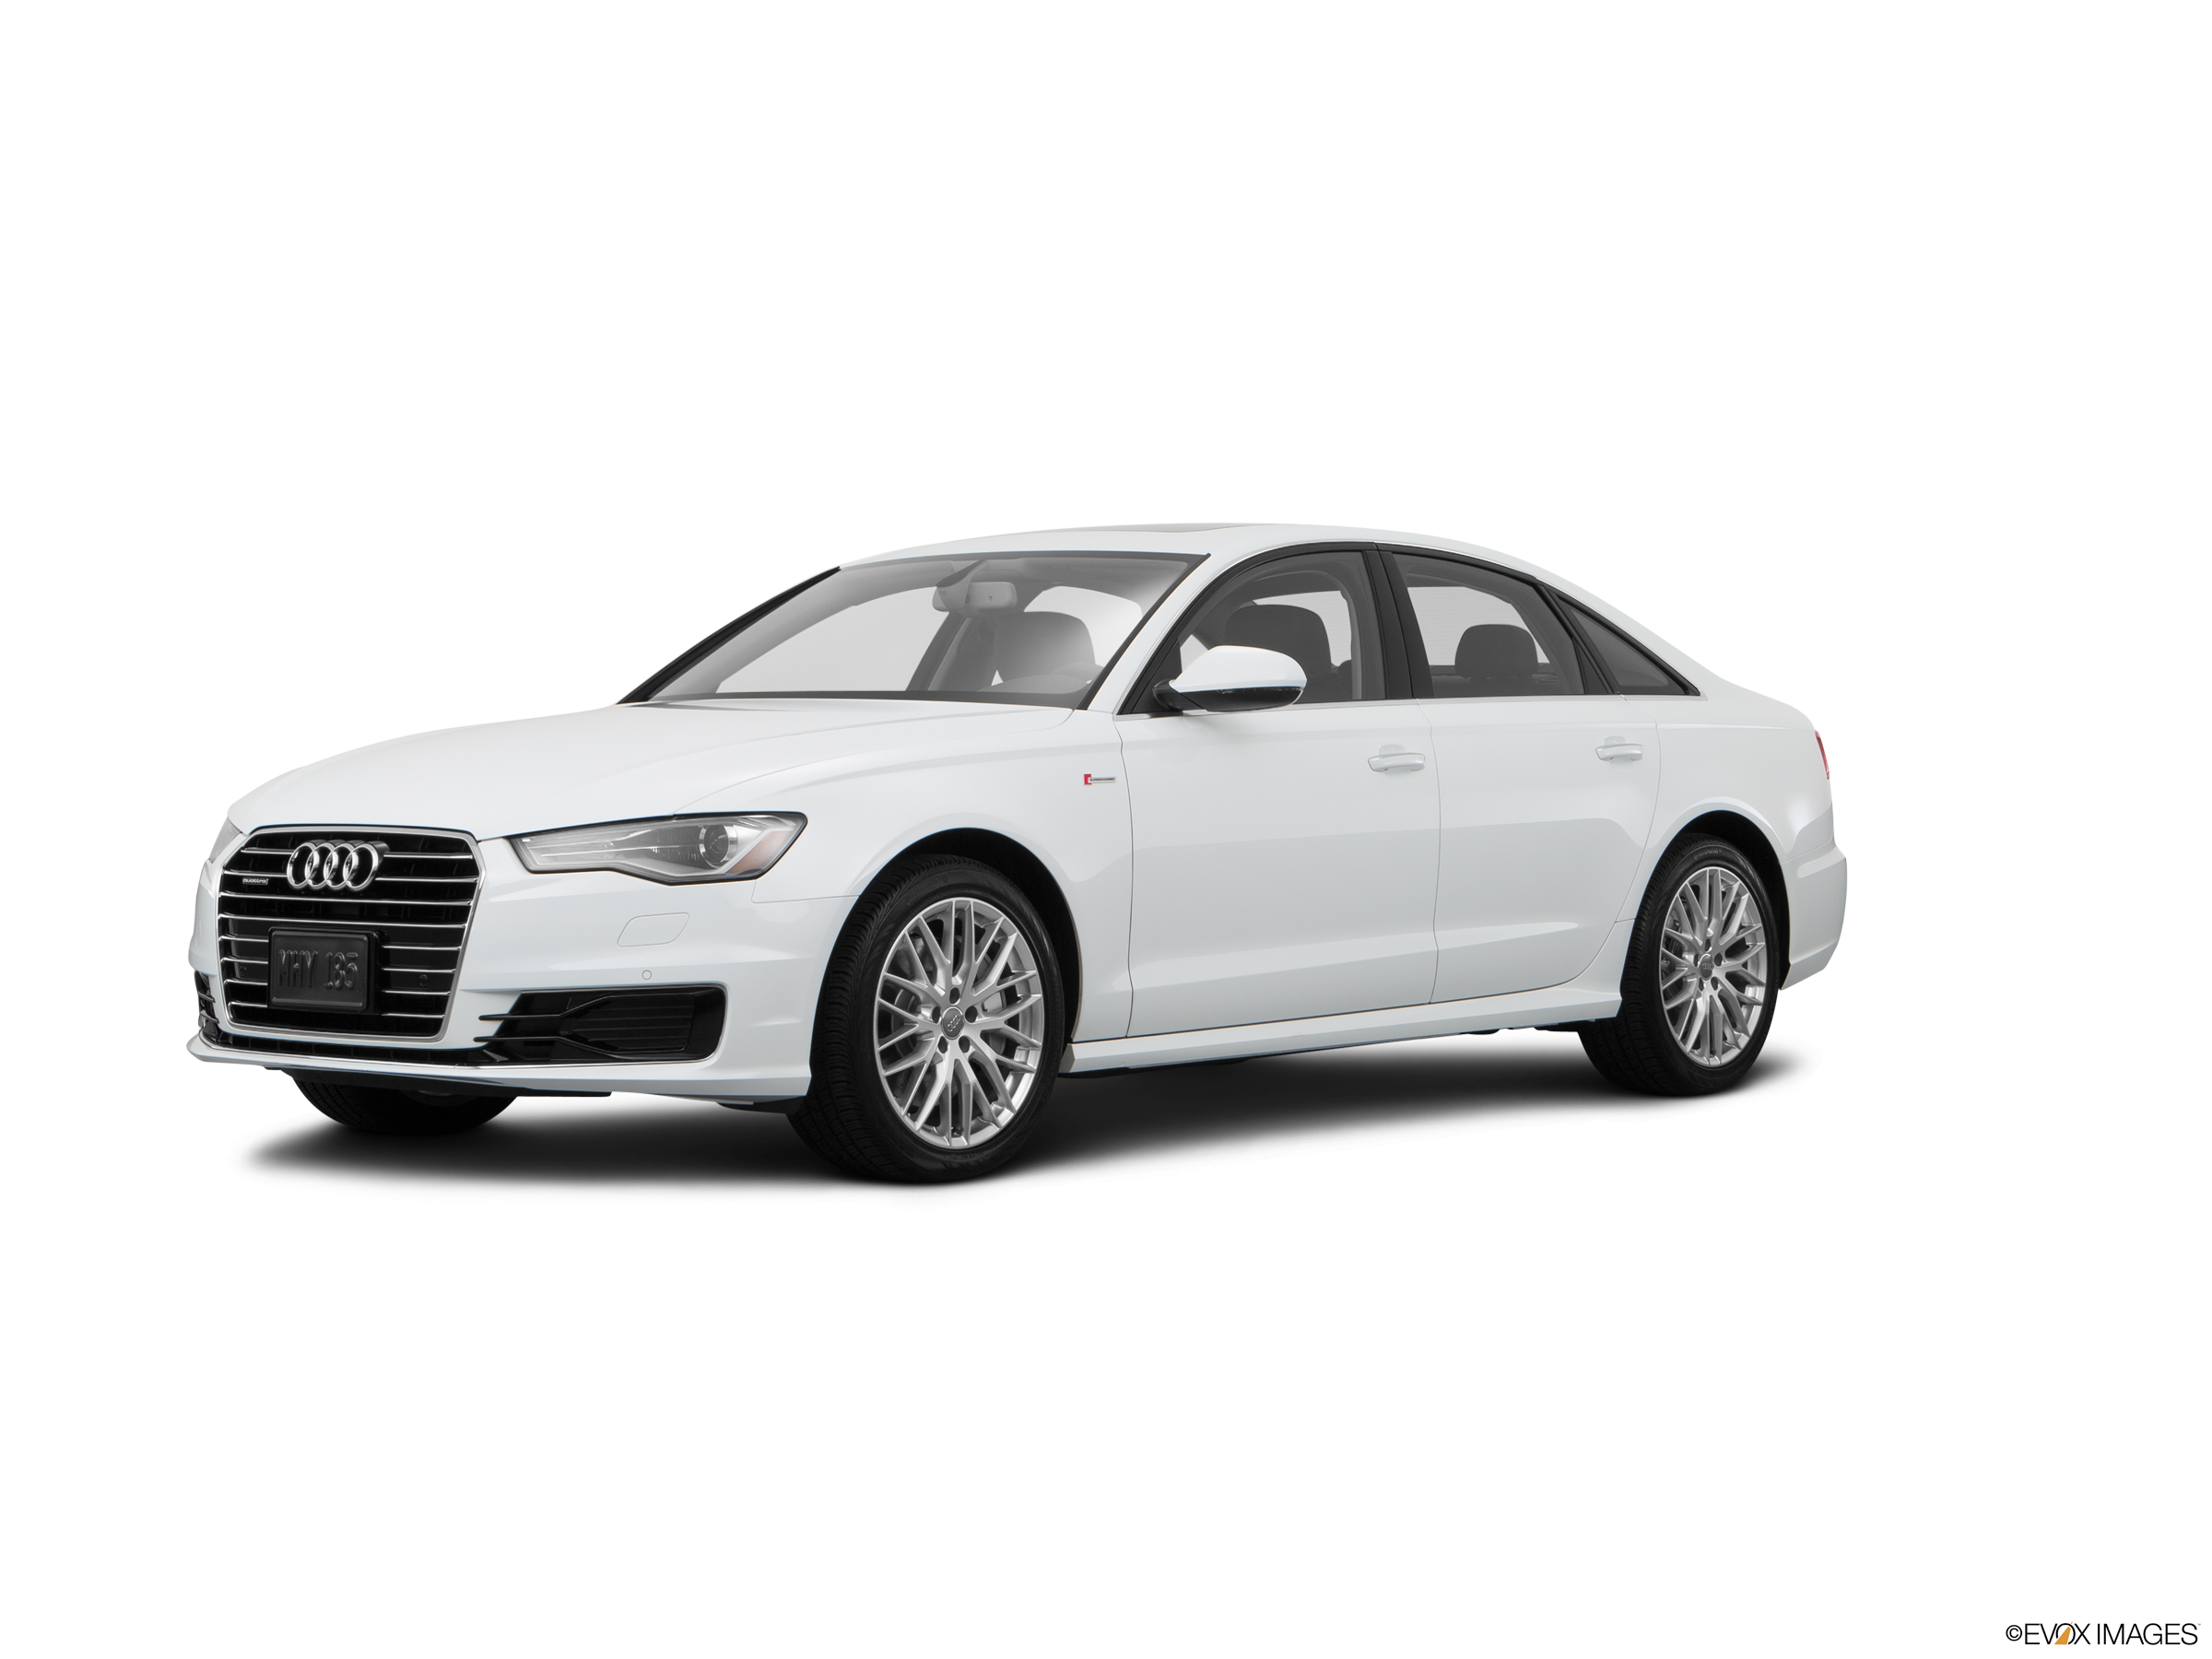 Audi A6 2015 đăng ký 2016 màu trắng Nâu  H Auto  Chuyên Mua  Bán  Ký  Gửi các dòng xe Lướt đã qua sử dụng